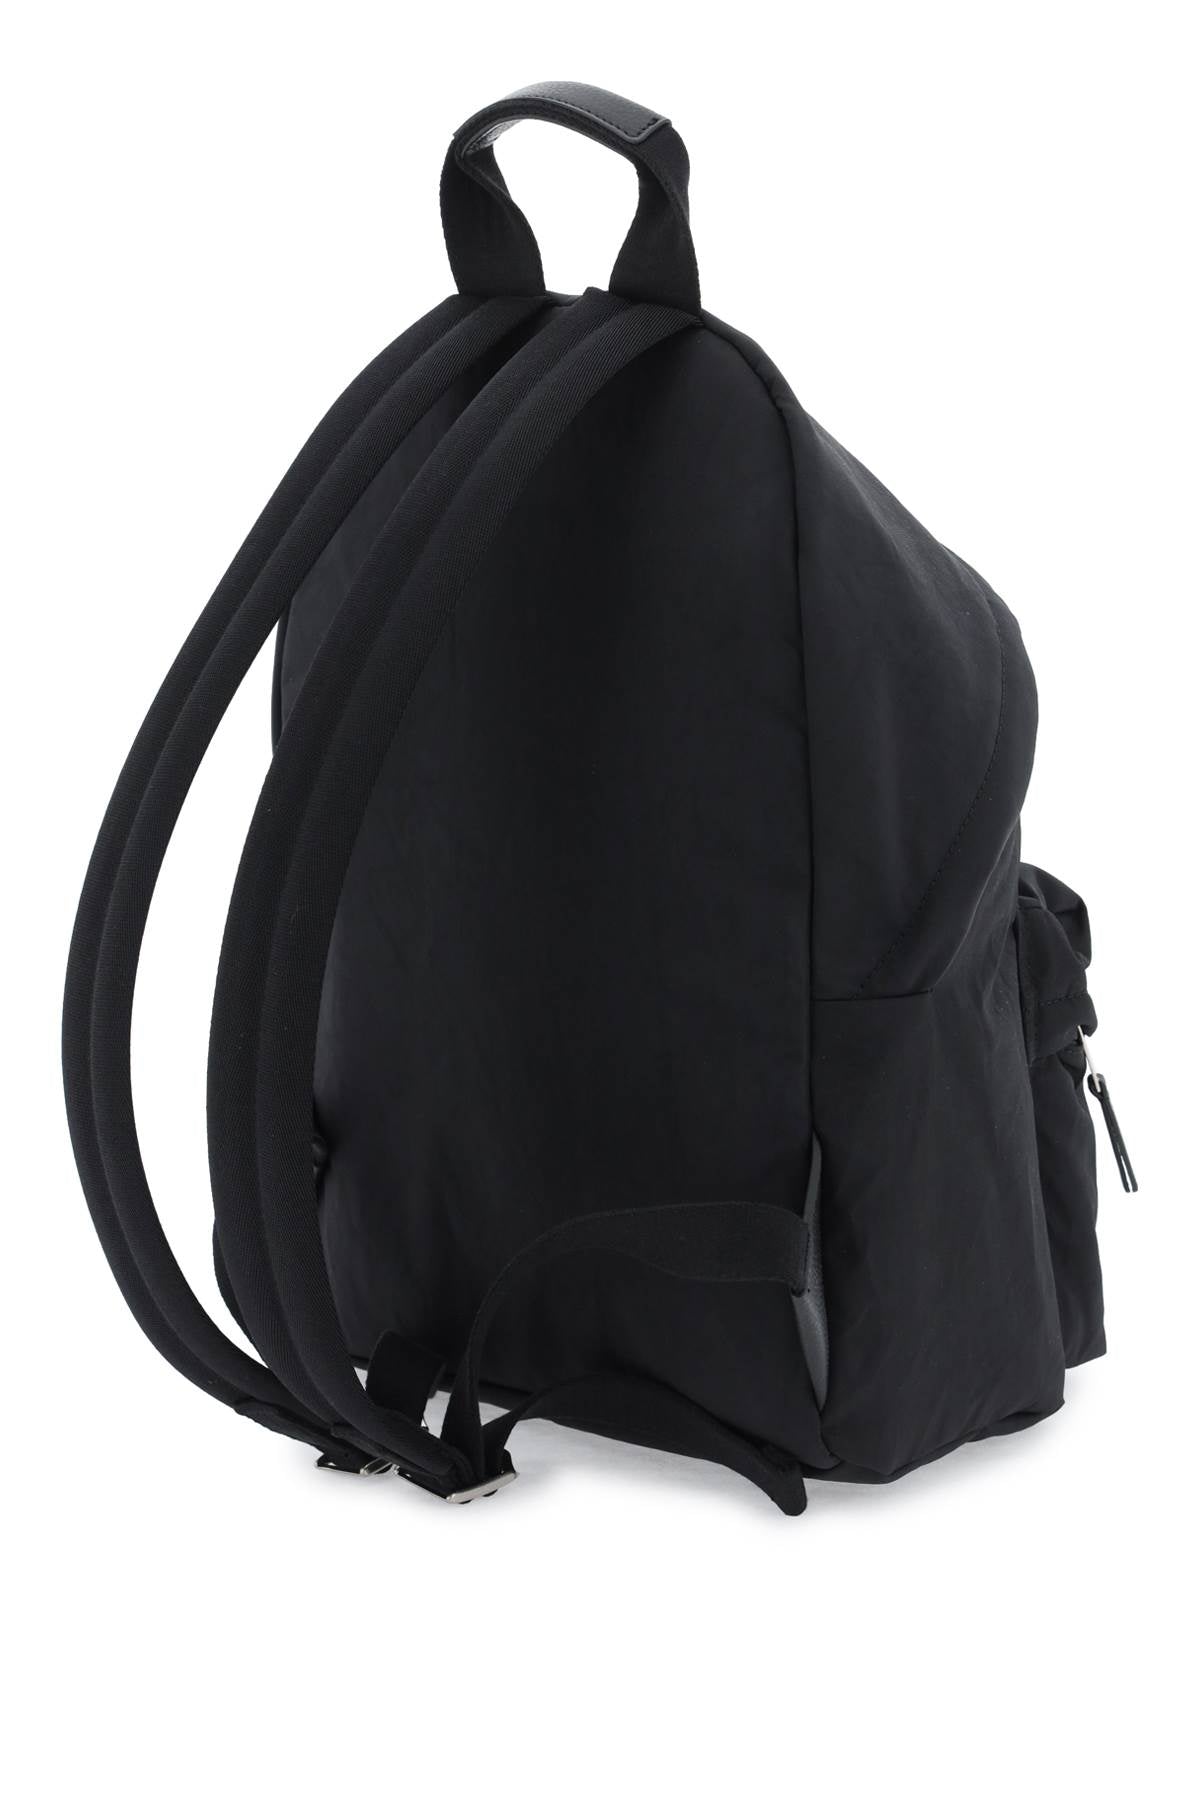 Shop Palm Angels Stylish Black Backpack For Men